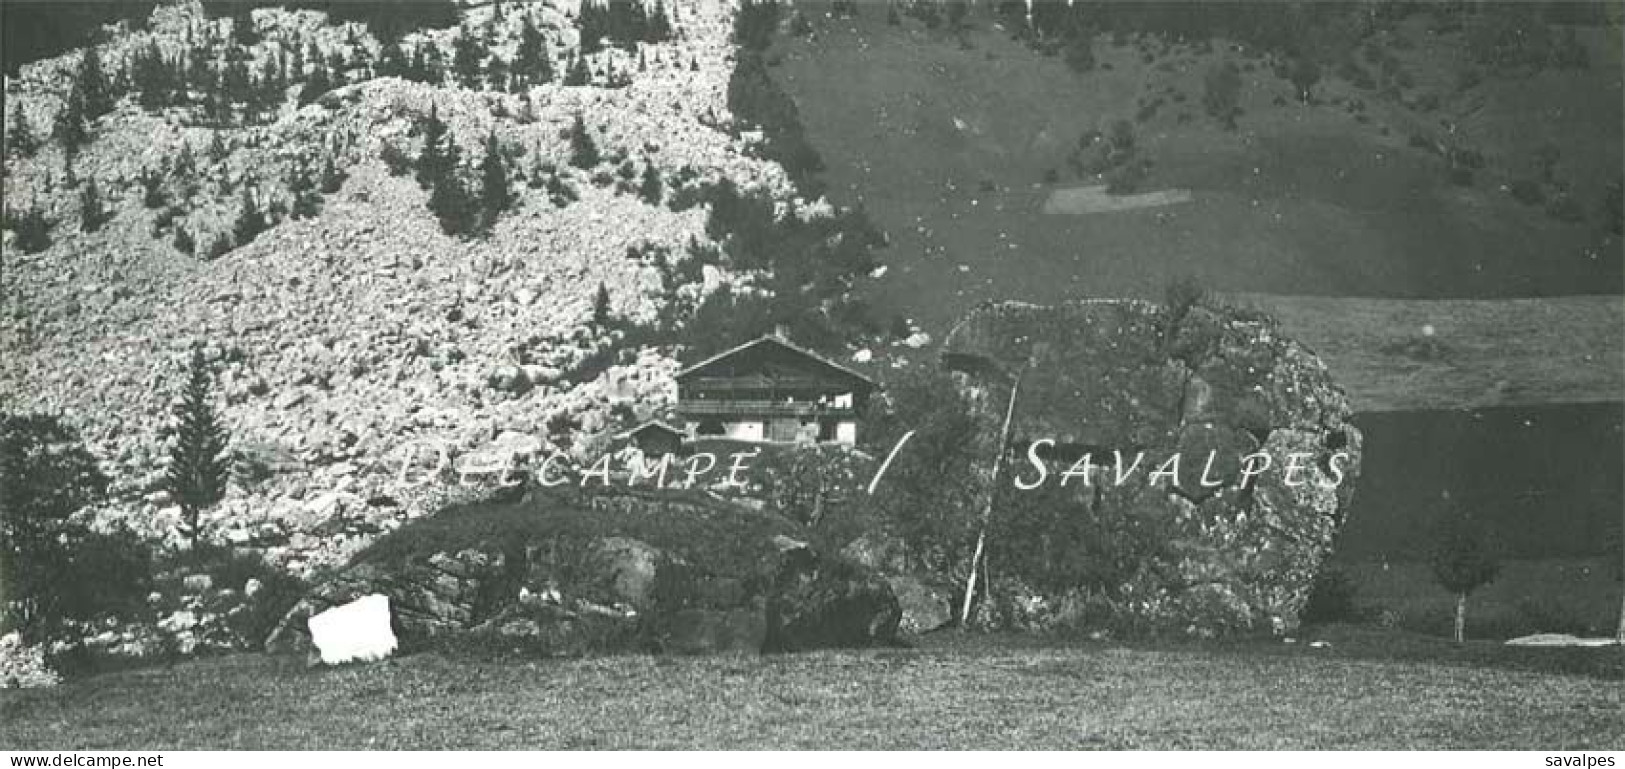 Haute-Savoie Aravis * La Clusaz éboulis de La Perrière * 5 photos originales vers 1907